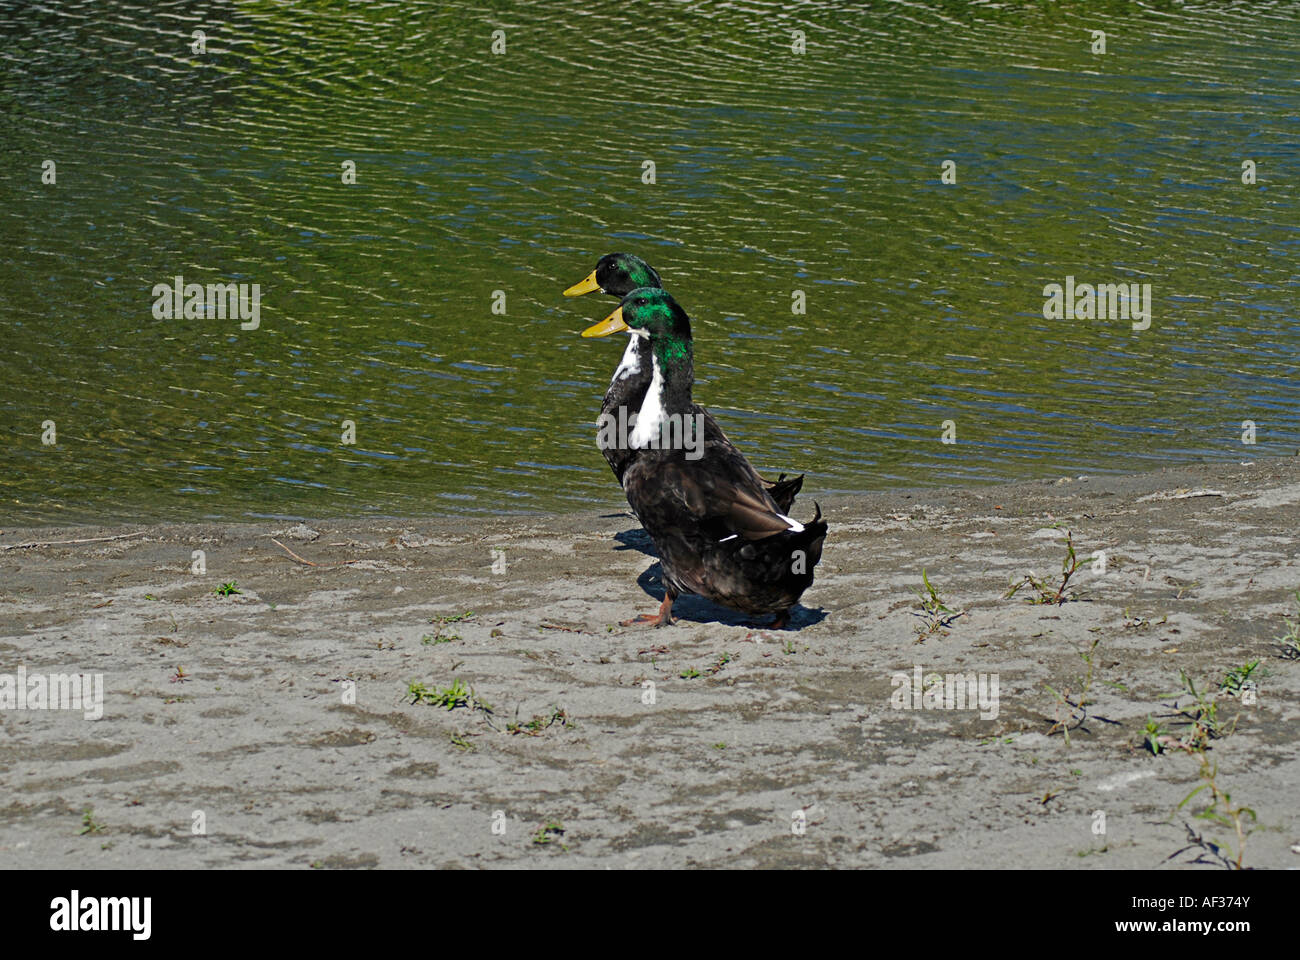 Pair of Ducks on stroll Stock Photo